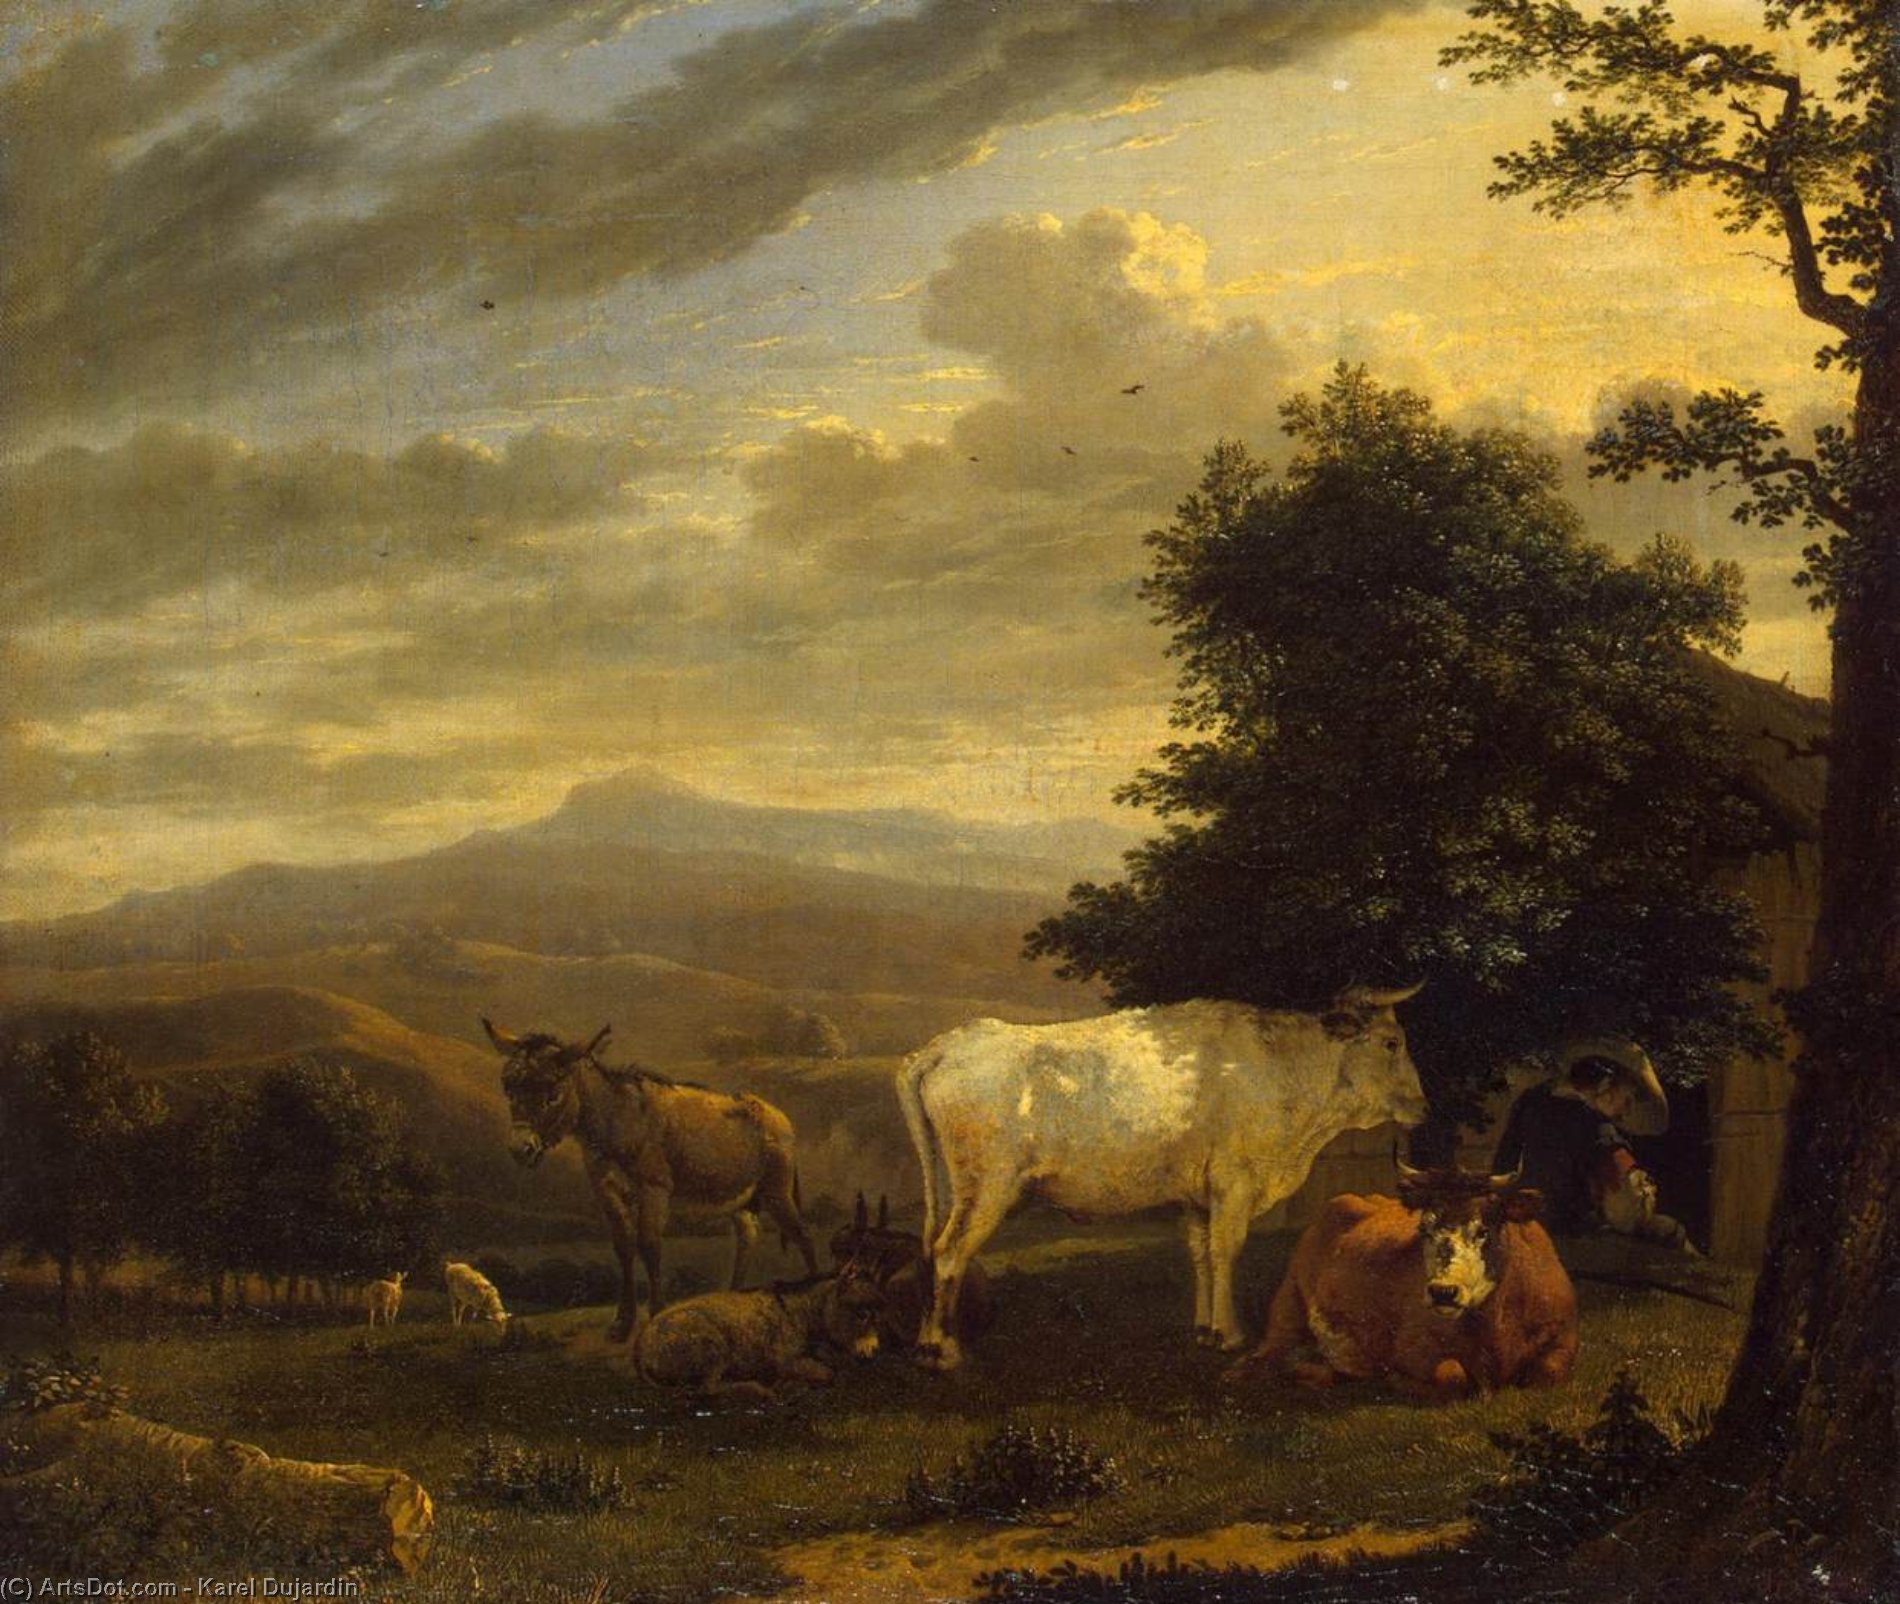 WikiOO.org - Encyclopedia of Fine Arts - Lukisan, Artwork Karel Dujardin - Landscape with Cattle